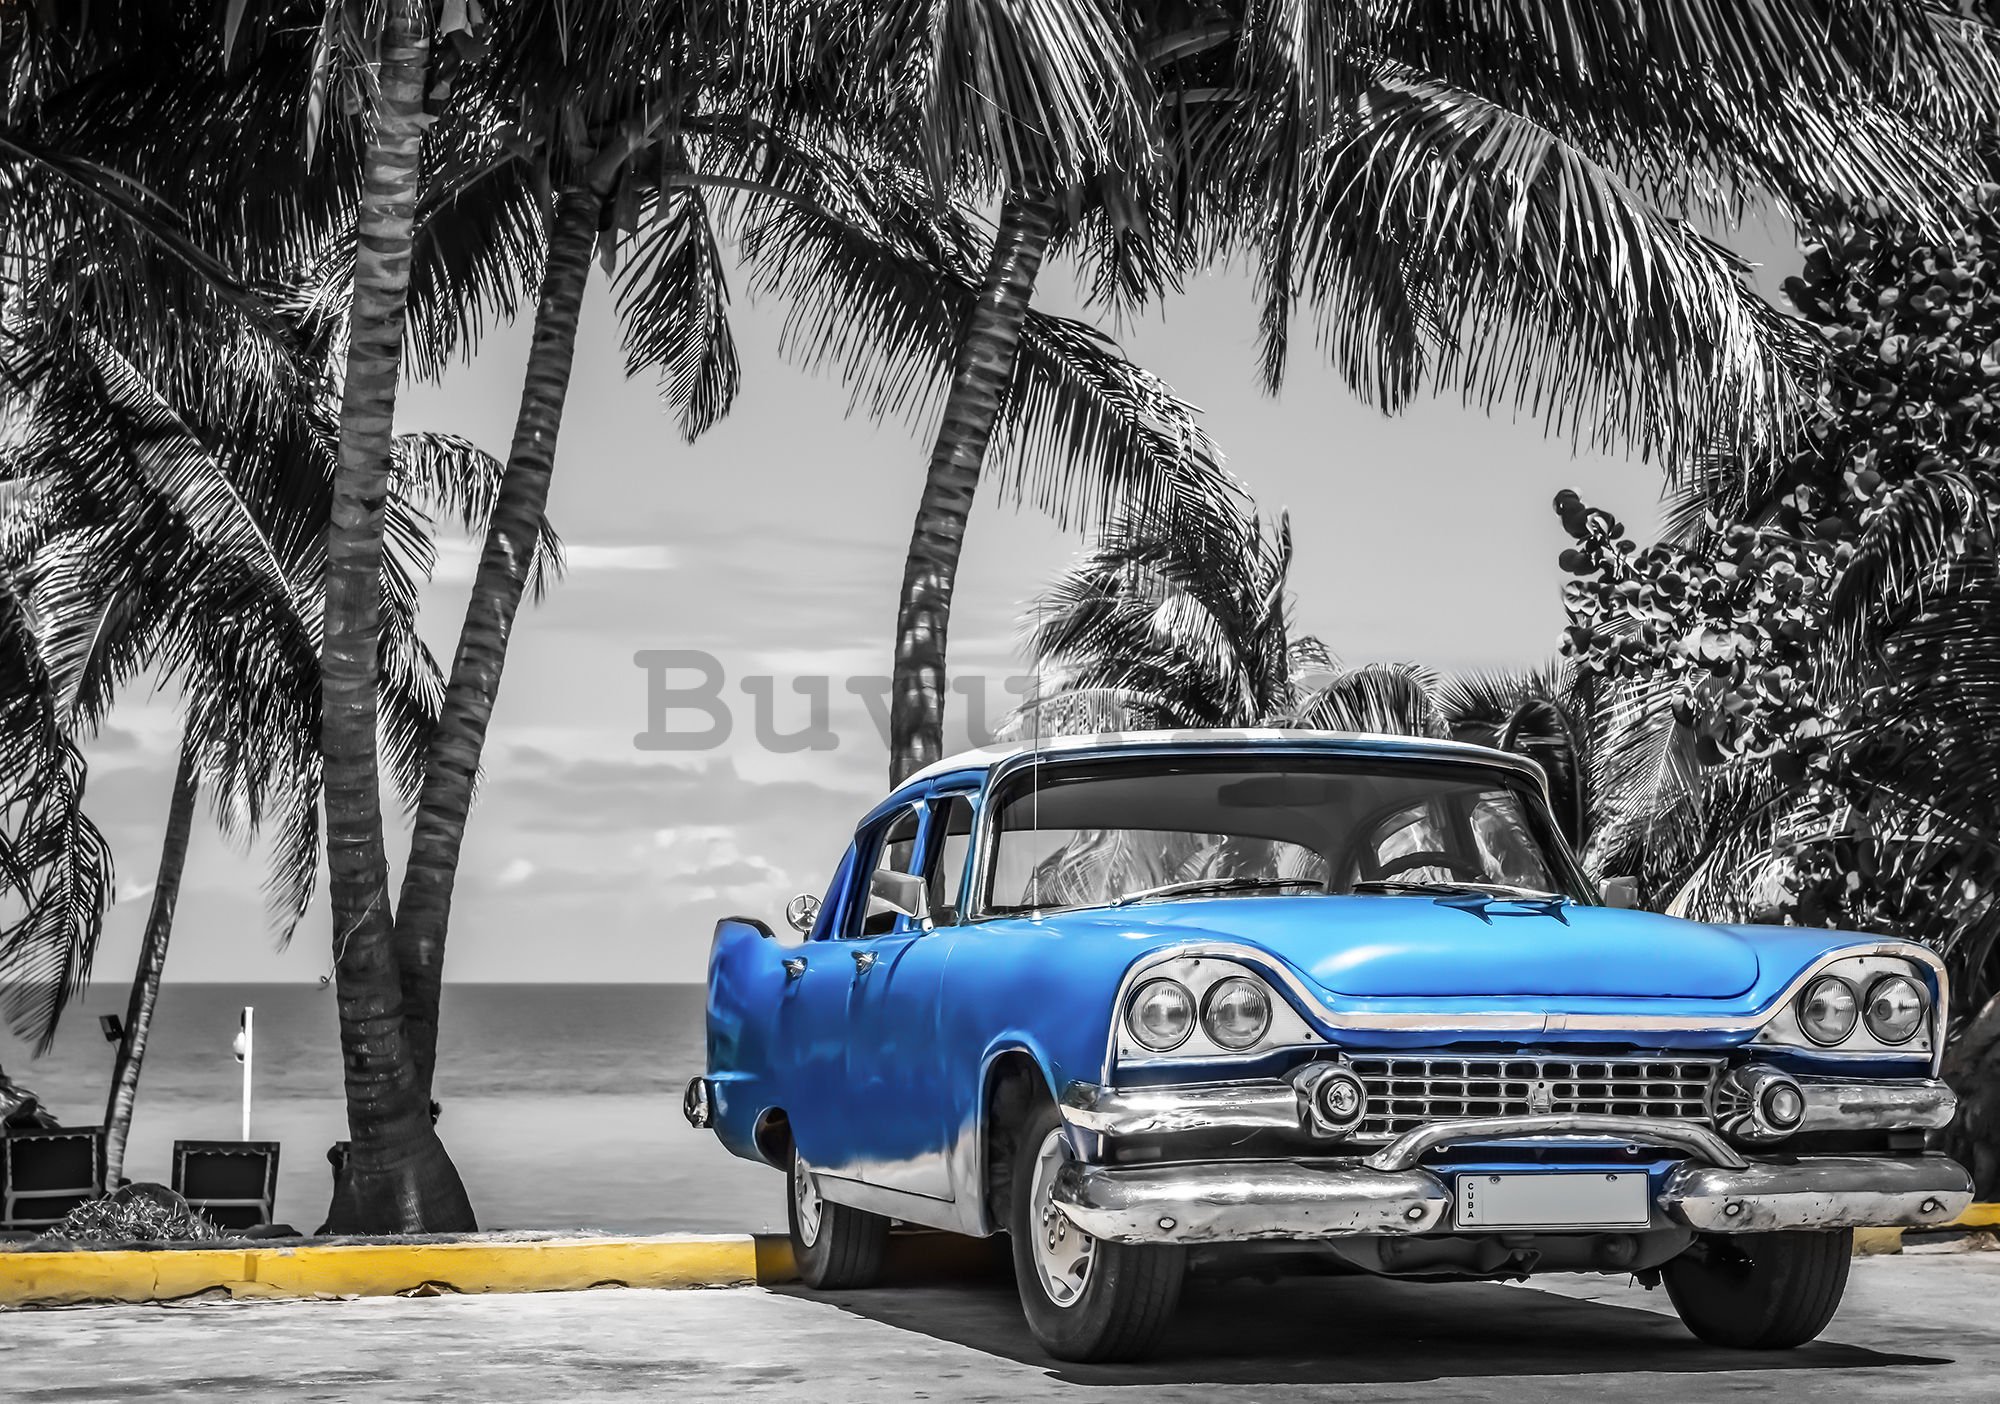 Fototapet: Cuba albastru mașină lângă mare - 184x254 cm